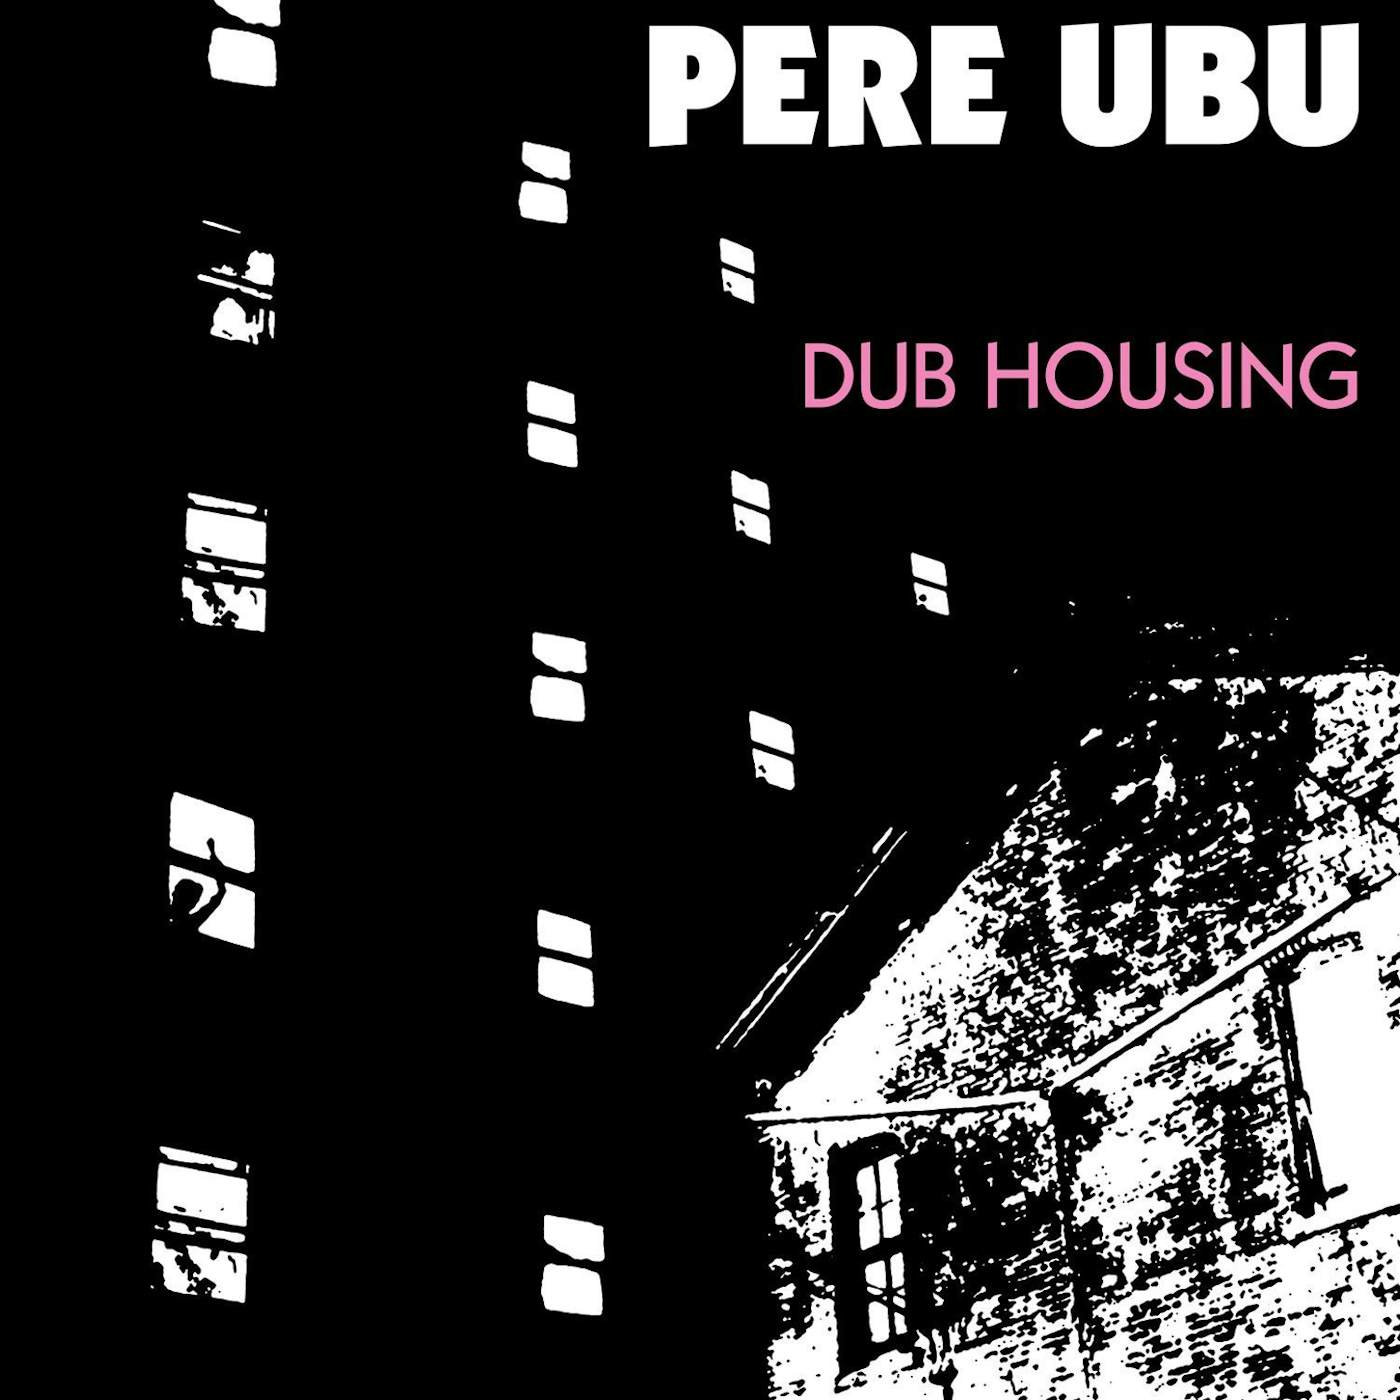 Pere Ubu DUB HOUSING CD